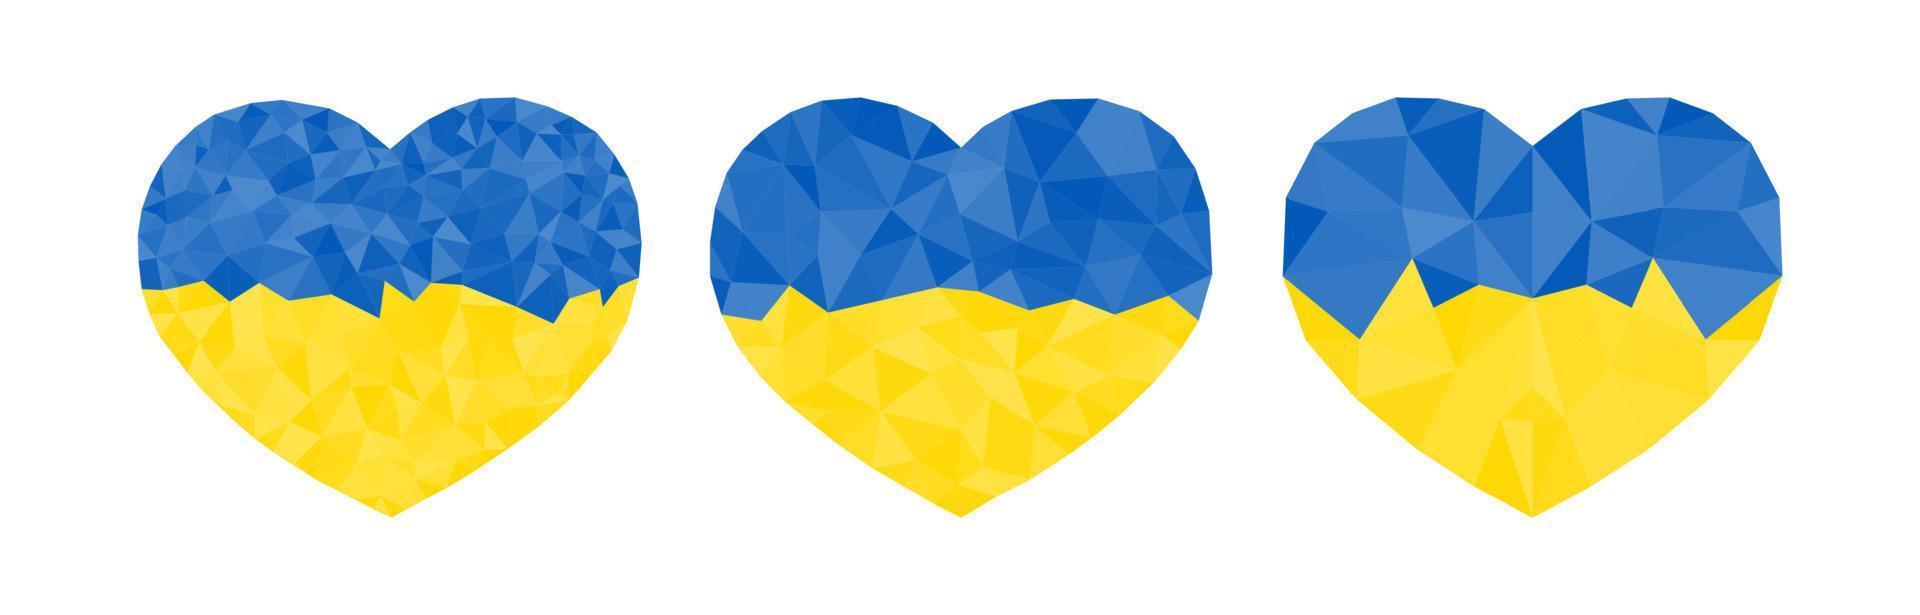 conjunto de corações em cores ucranianas vetor